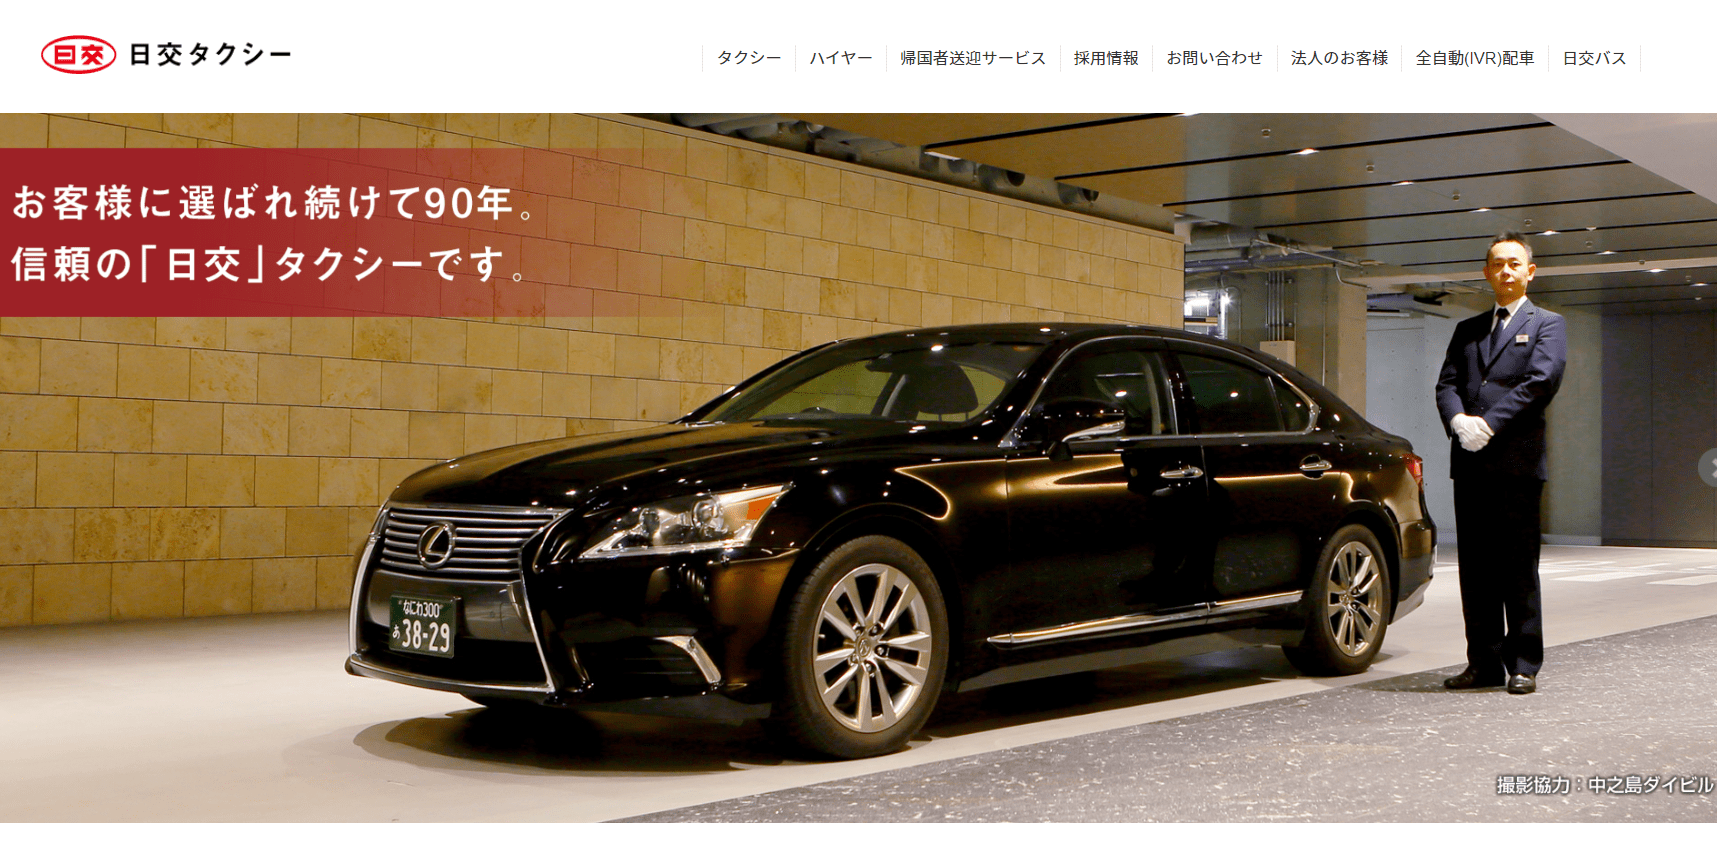 Nihonkotsu Taxi Website